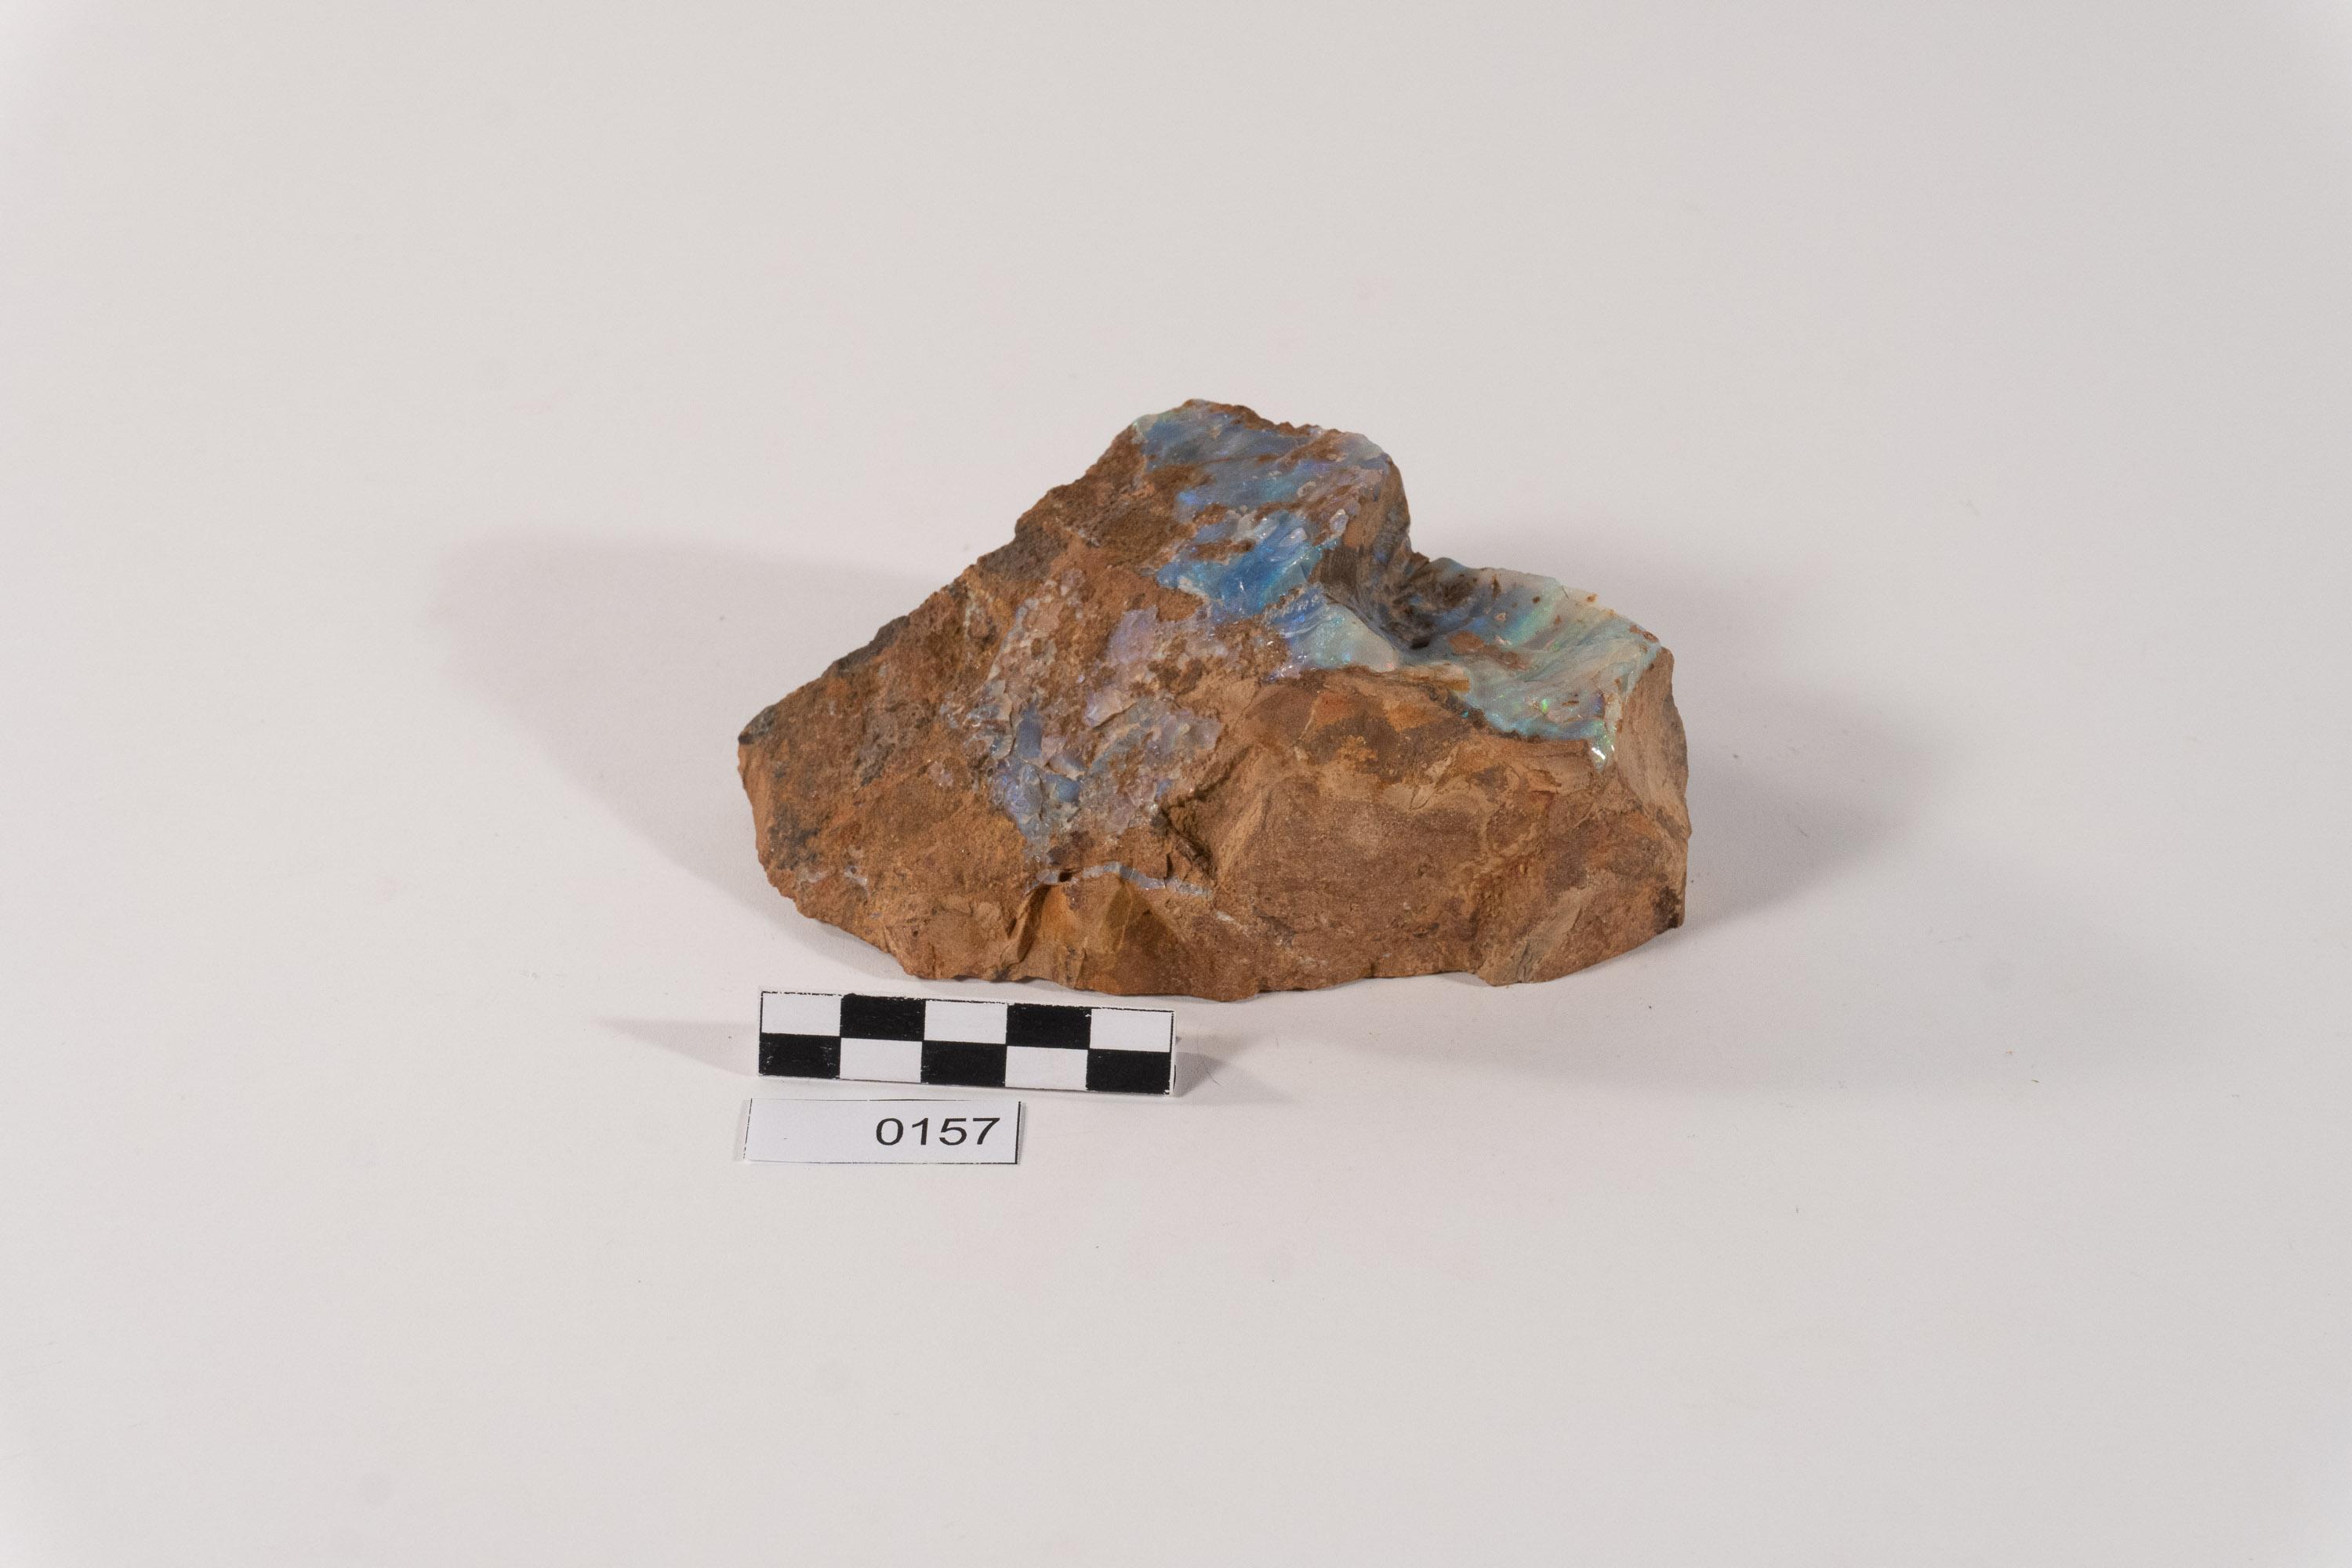 Opala Azul no Arenito Silicificado